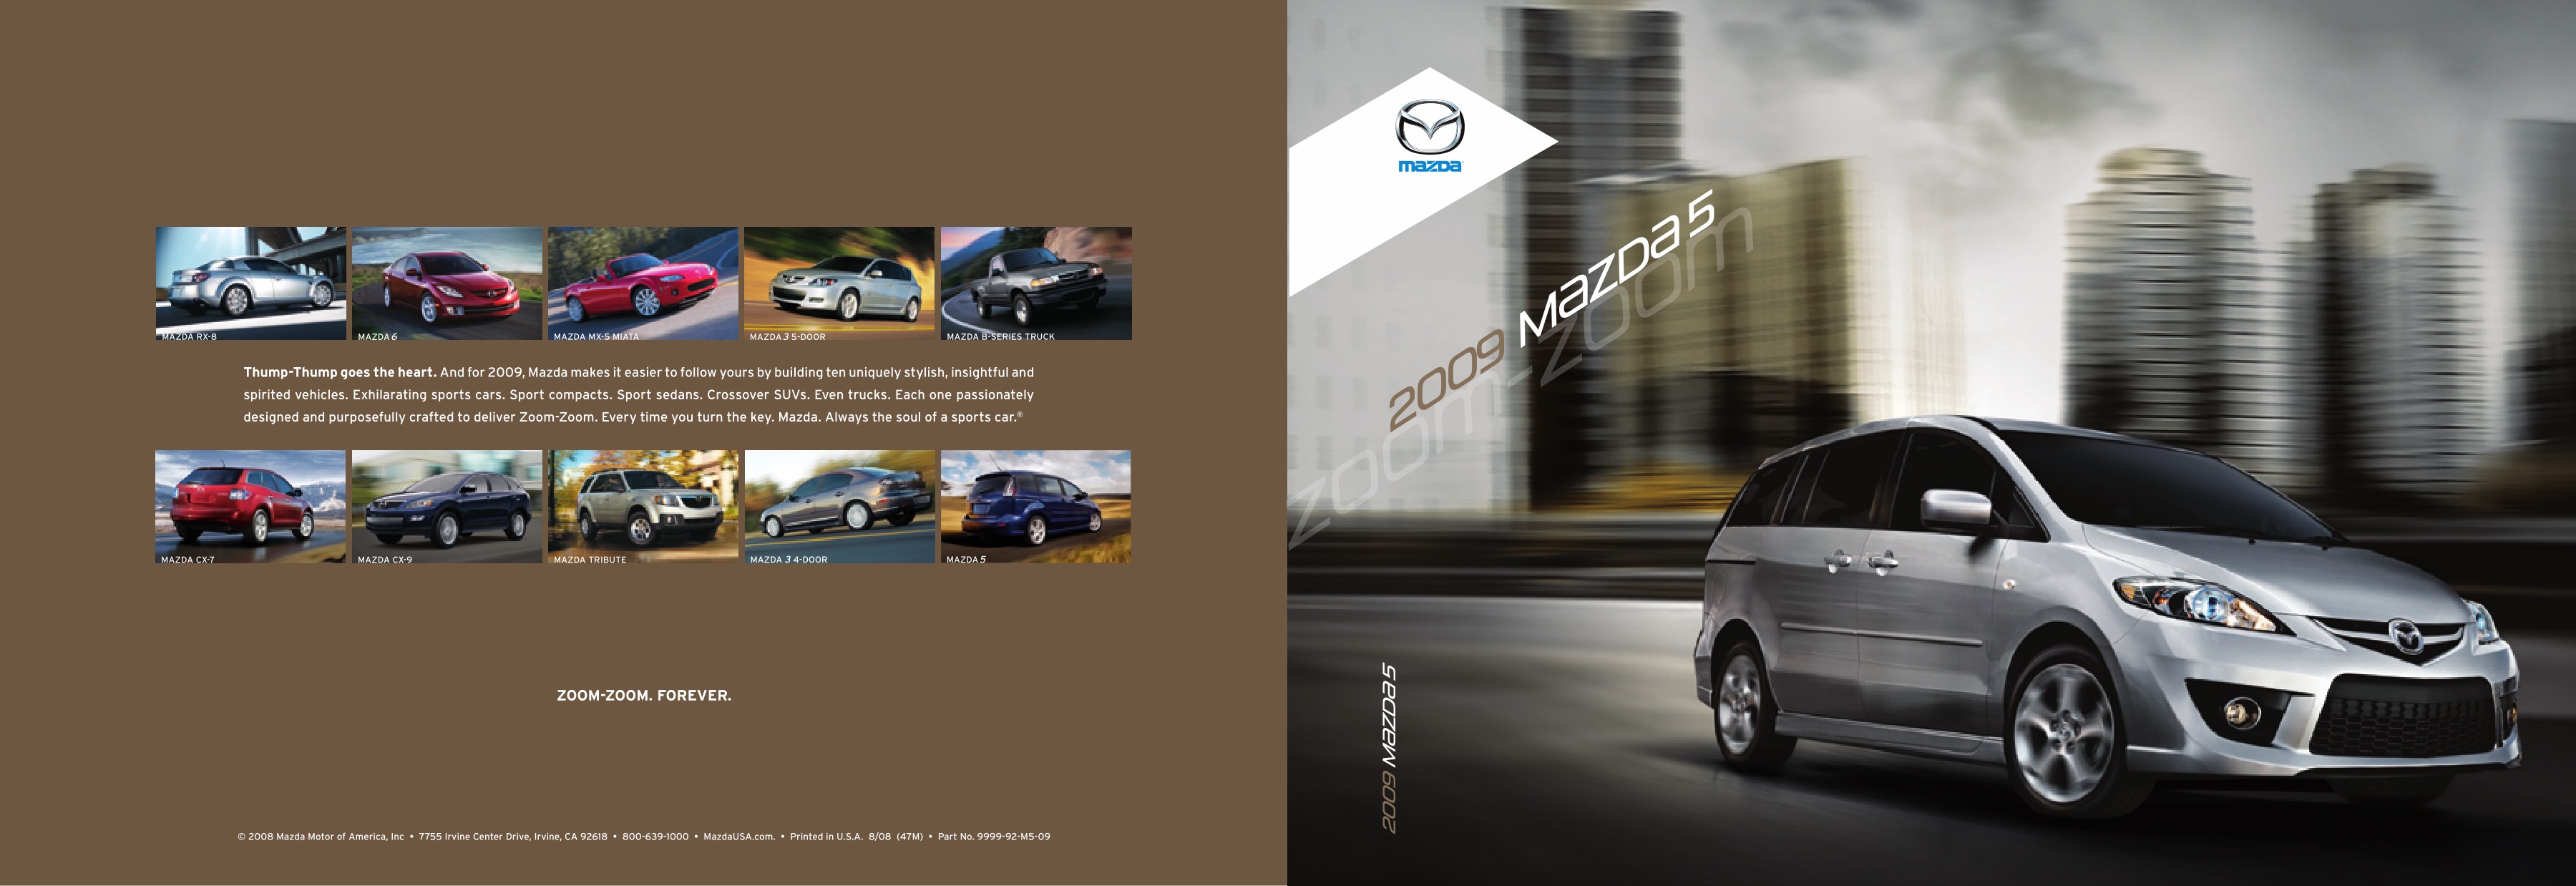 2009 Mazda 5 Brochure